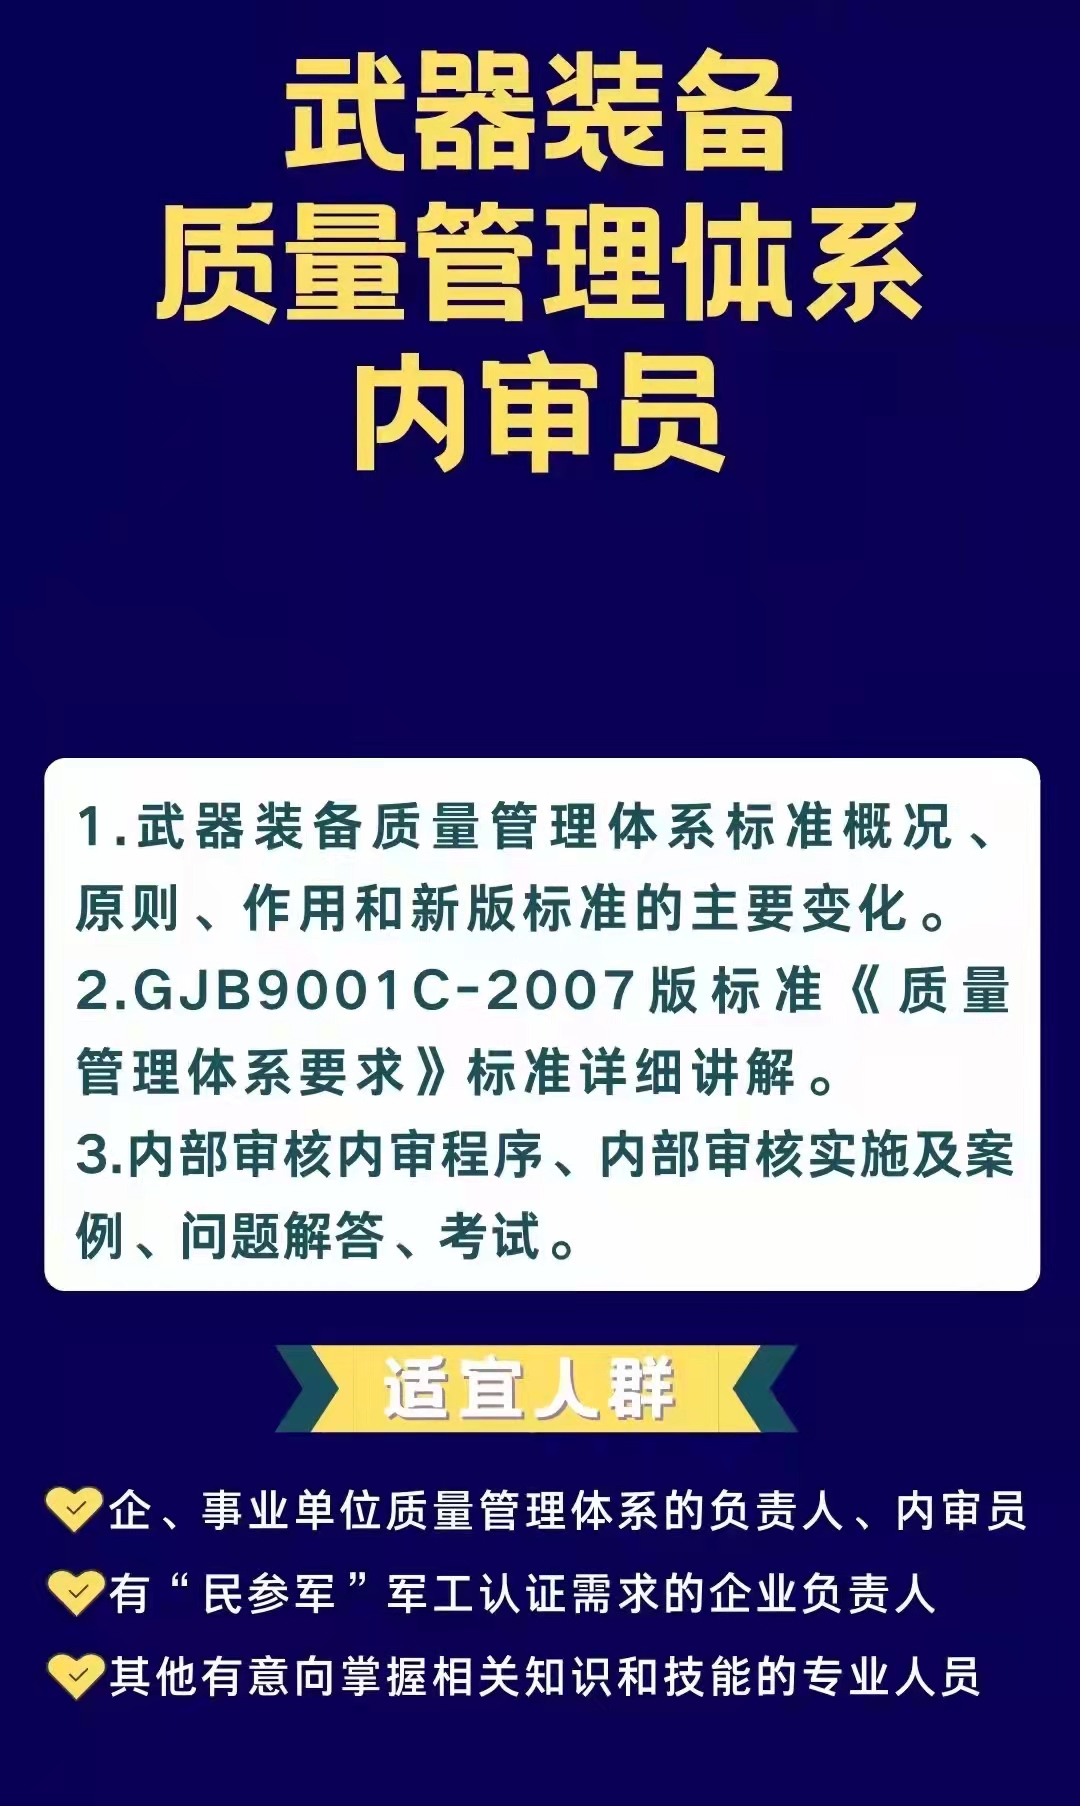 历年军队文职岗位分析：北京篇(图1)